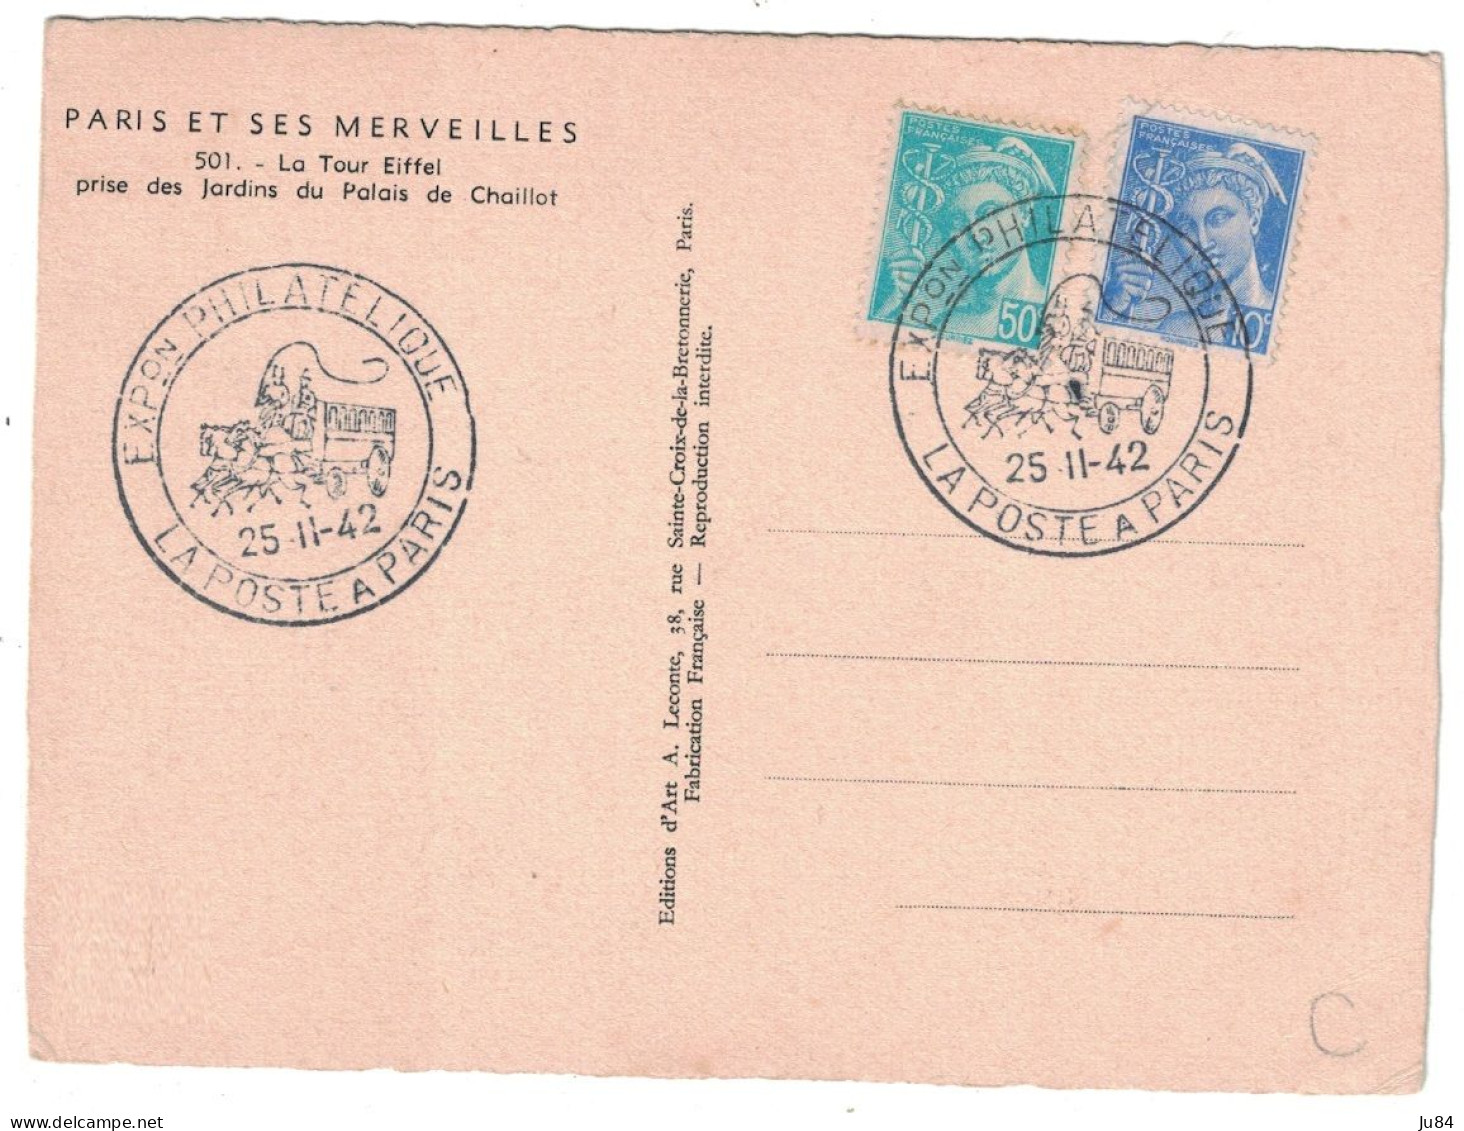 Paris - Cachet Commémoratif - Exposition Philatélique La Poste à Paris - Tour Eiffel - 25 Novembre 1942 - Cachets Commémoratifs